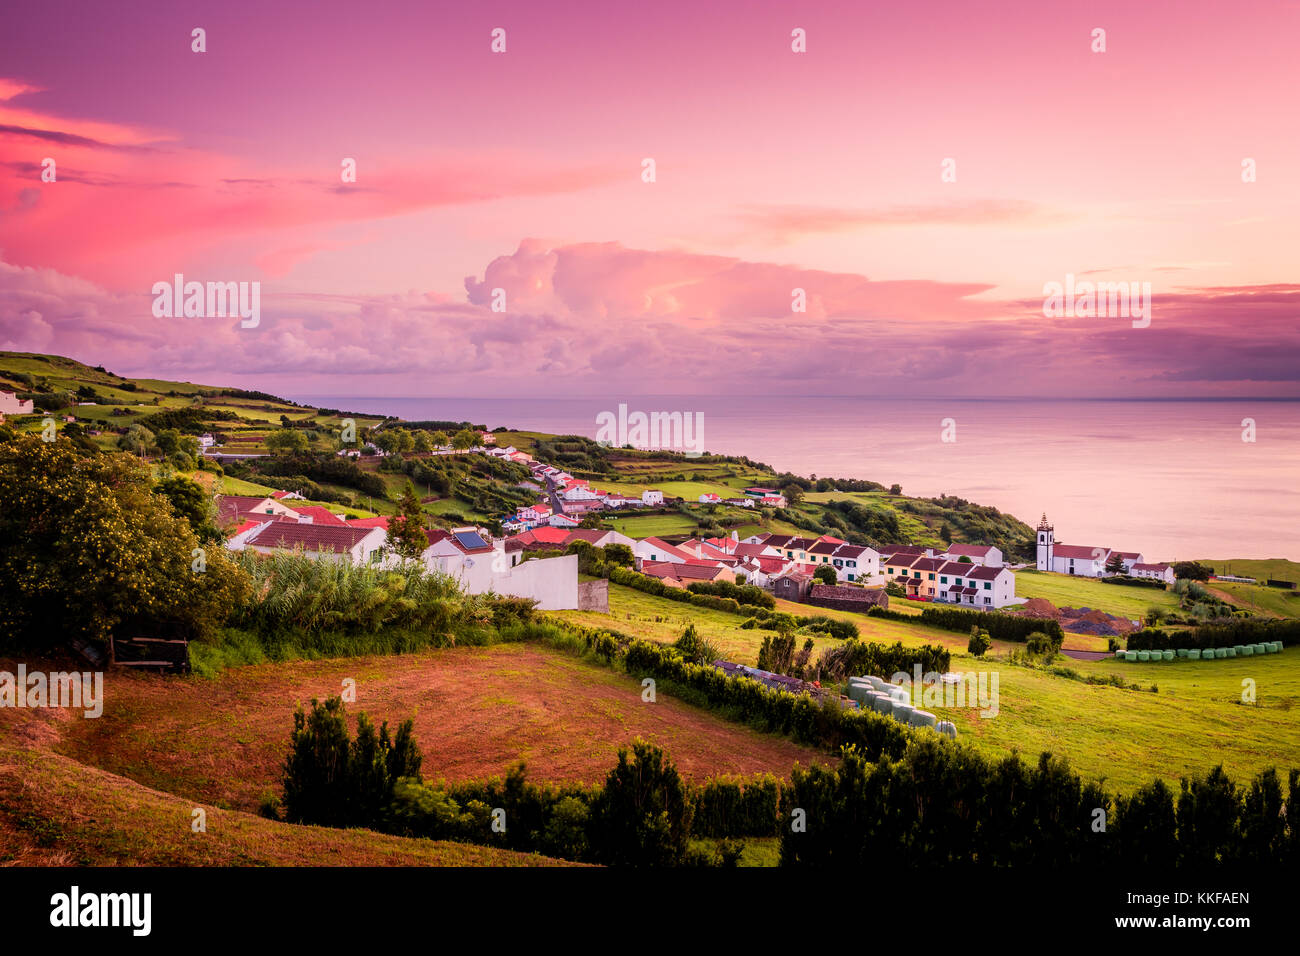 Di un bel colore rosa sunrise in un villaggio del nordeste, isola Sao Miguel, Azzorre, Portogallo Foto Stock